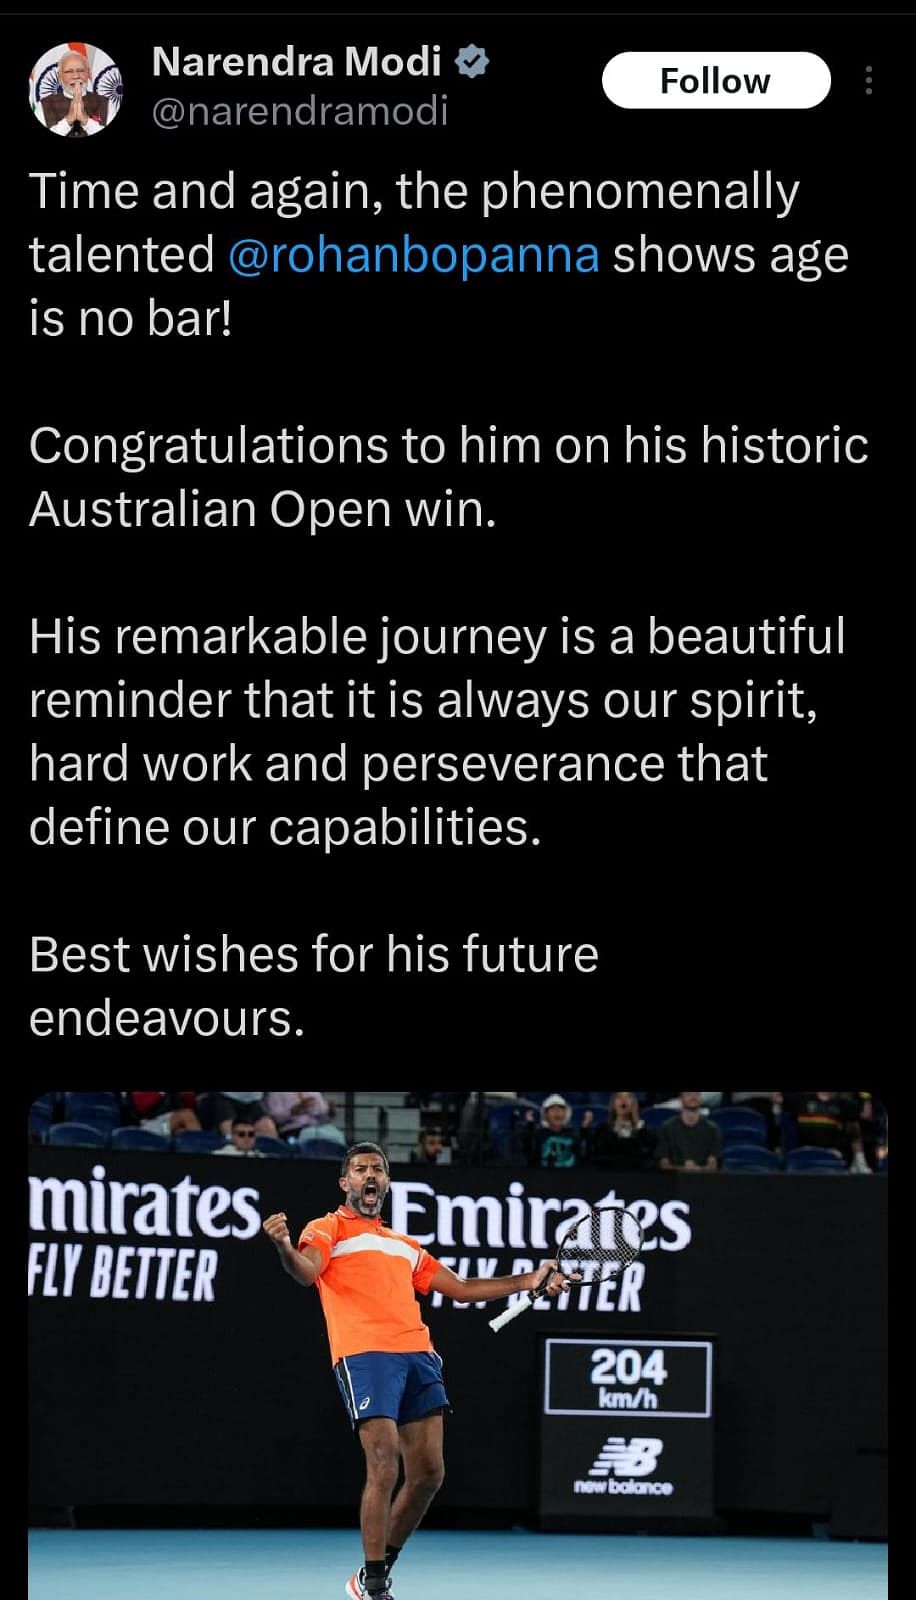 Rohan Bopanna ने मैथ्यू एबडेन के साथ ऑस्ट्रेलियन ओपन में मेंस डबल खिताब जीतकर एक नया विश्व रिकॉर्ड बनाया है.